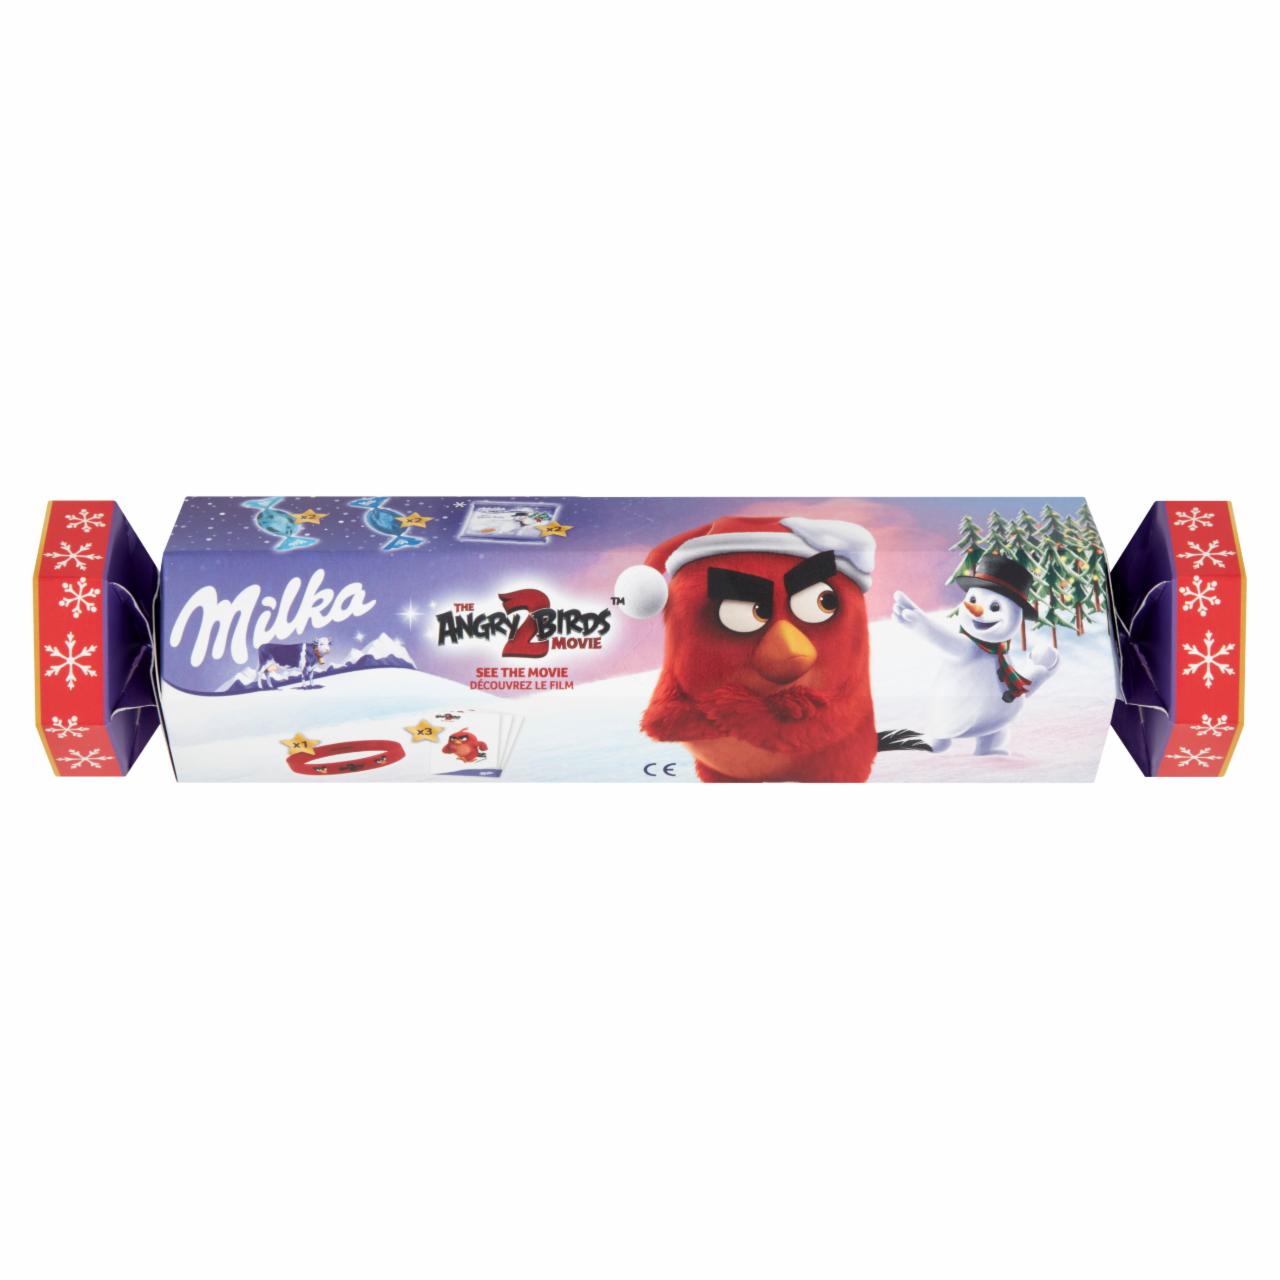 Képek - Milka The Angry Birds 2 töltött tejcsokoládé és tejcsokoládé drazsé válogatás 88 g